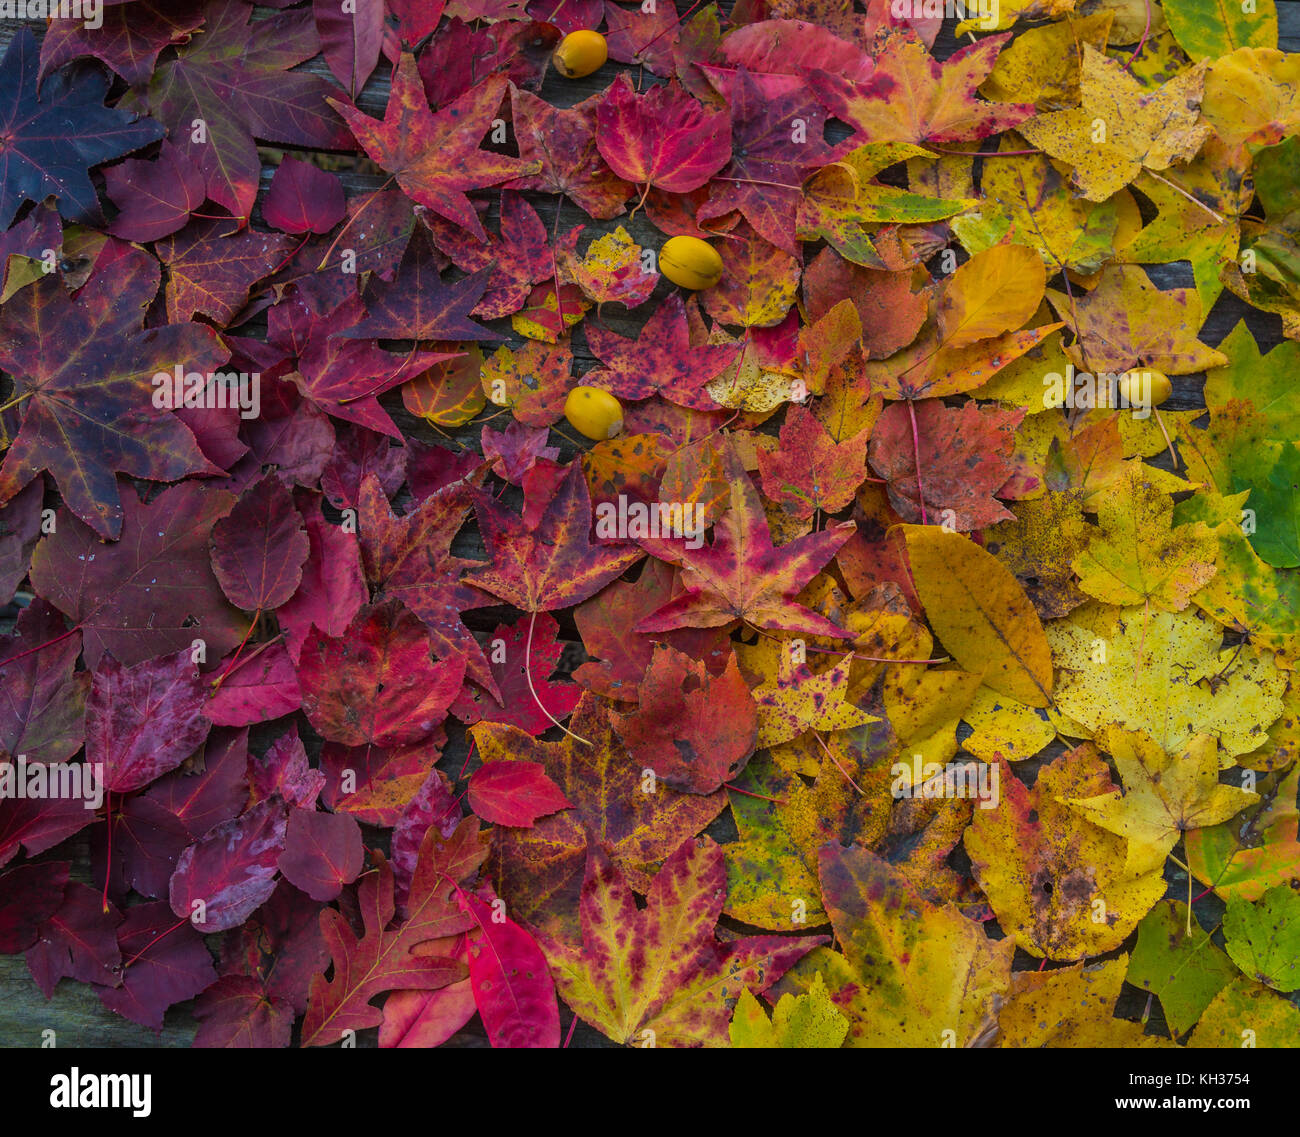 Ein ombre von Herbstlaub - Rot, Orange, Gelb und Grün - mit Drei Eicheln. Lebhafte Farben und eine schöne Darstellung der Herbst. Stockfoto